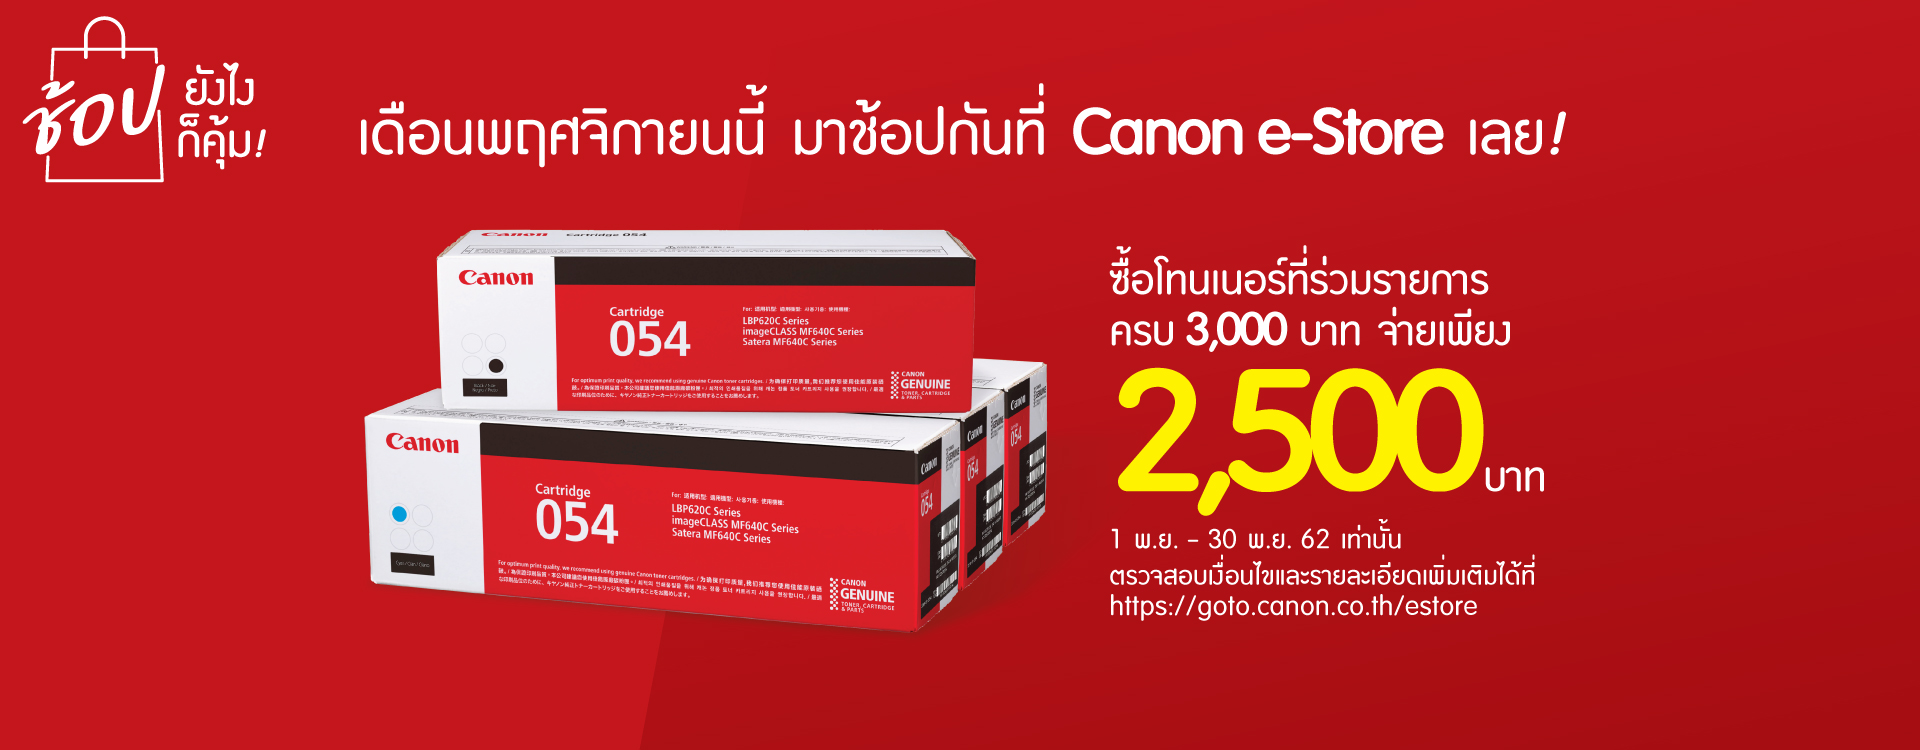 Home Canon Thailand - arena x roblox